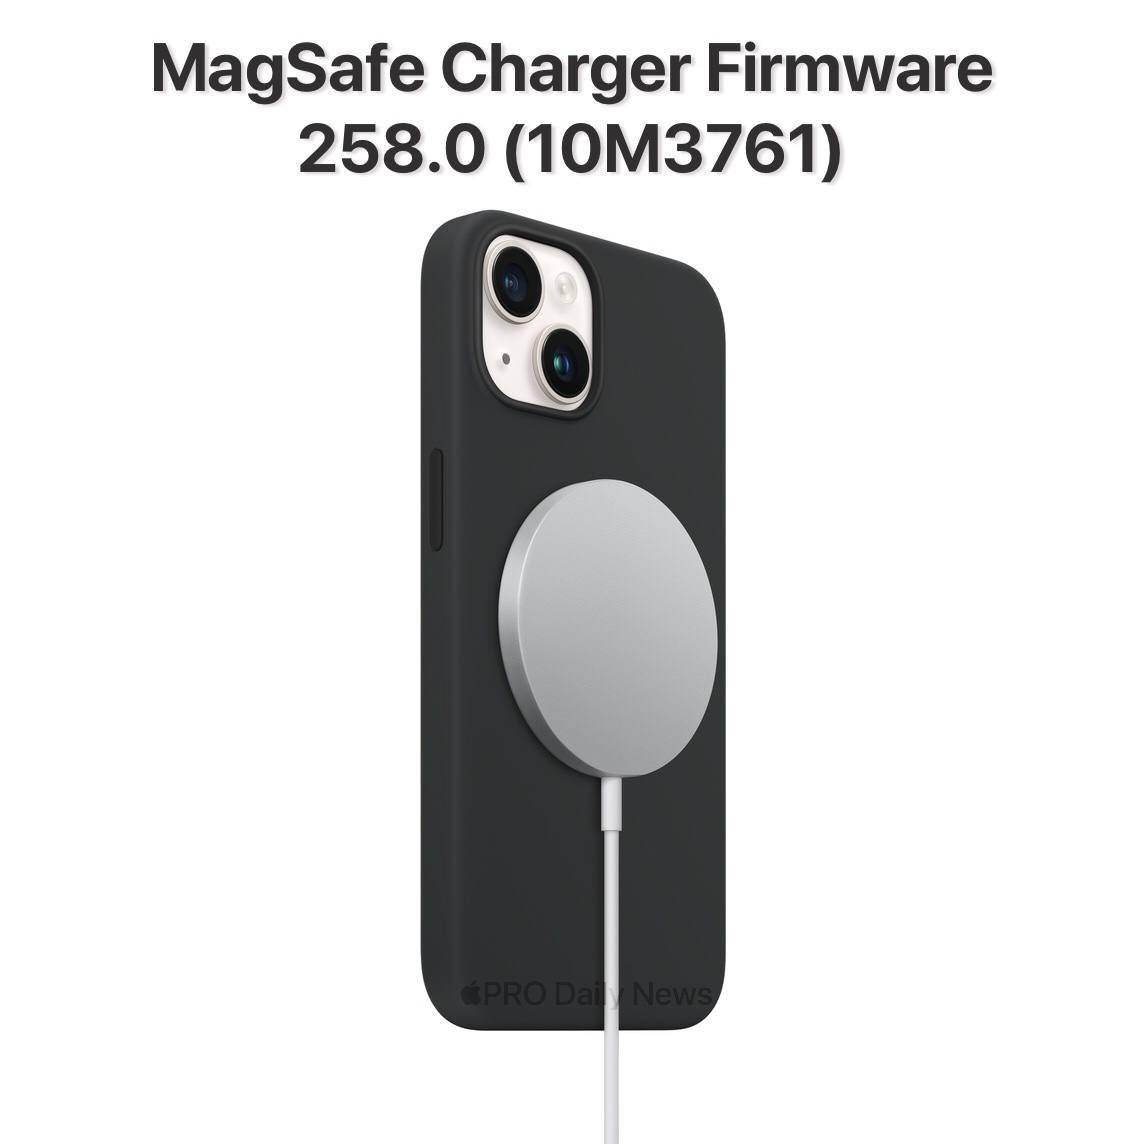 苹果充电破解版:第 4 次更新，苹果为 MagSafe 充电器发布 10M3761 固件